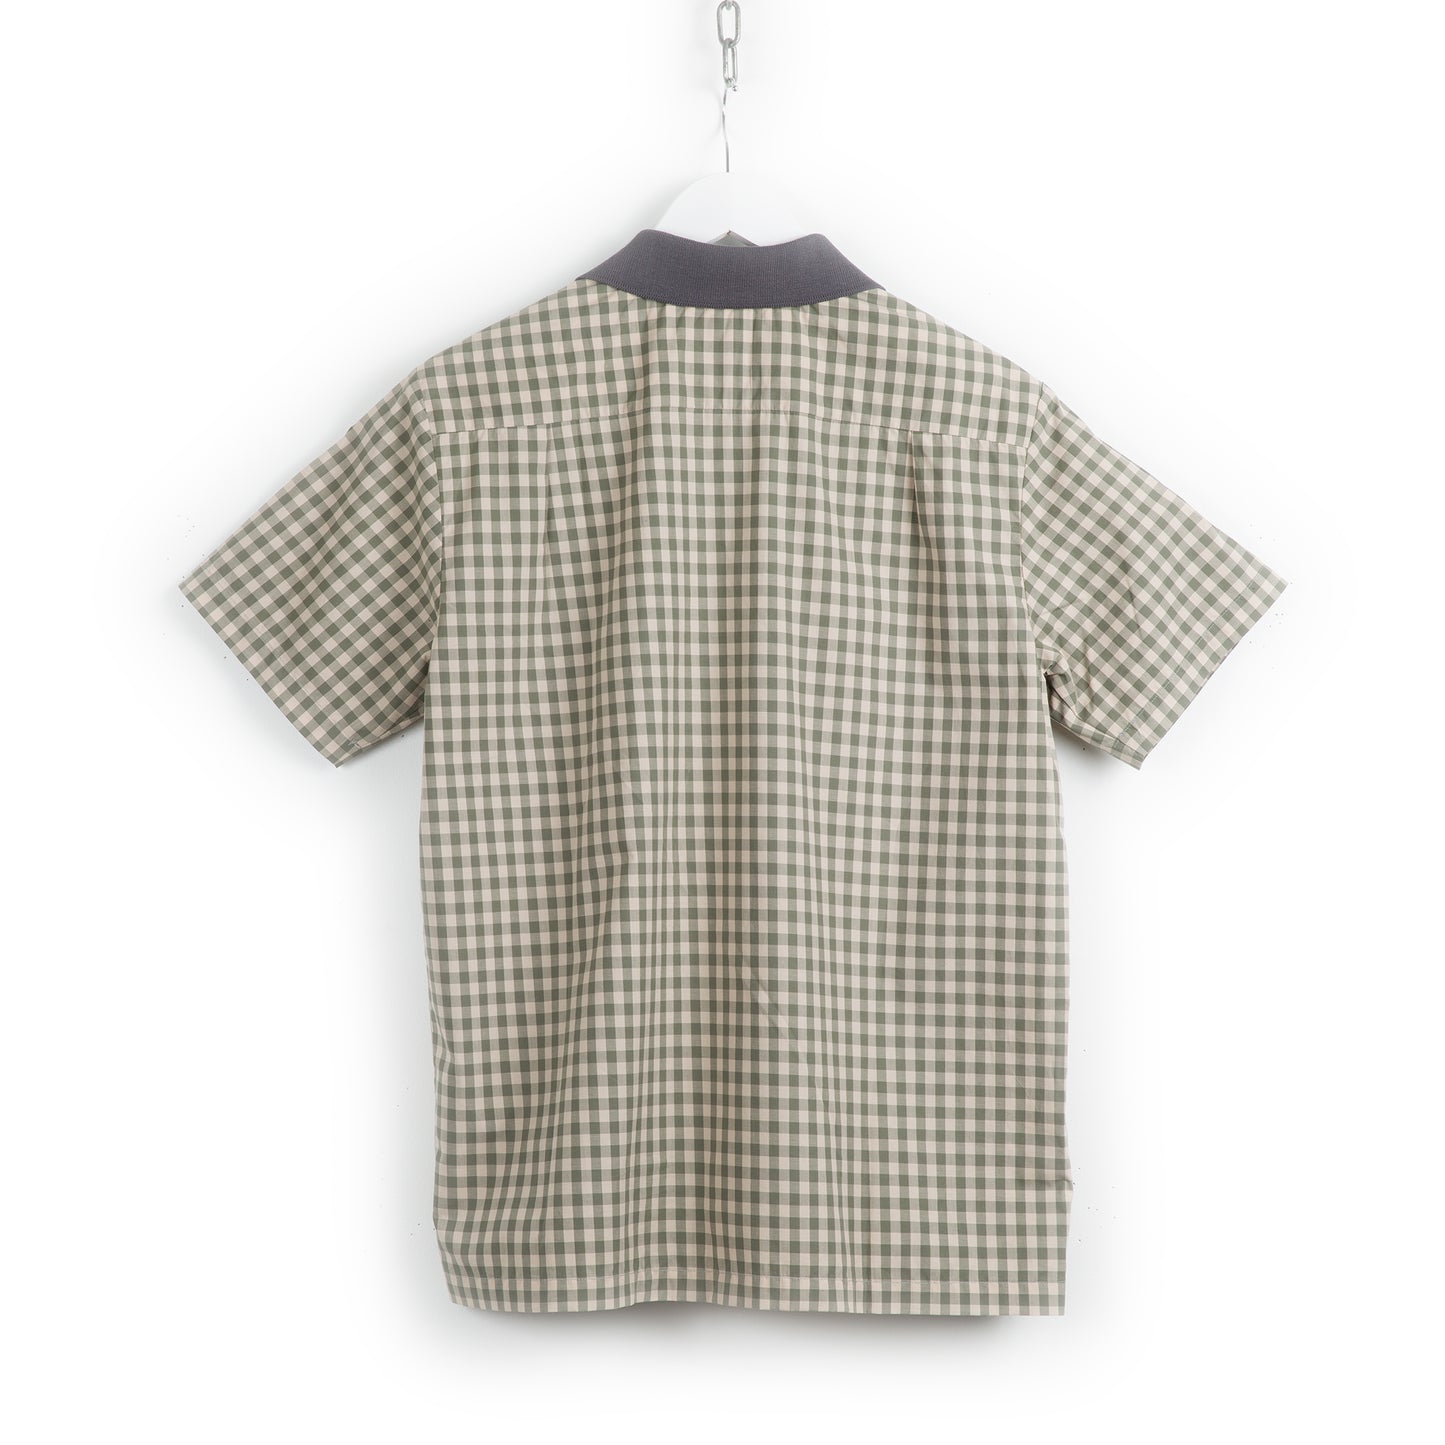 Sonoran - Rib collar shirt  (Light Grey)